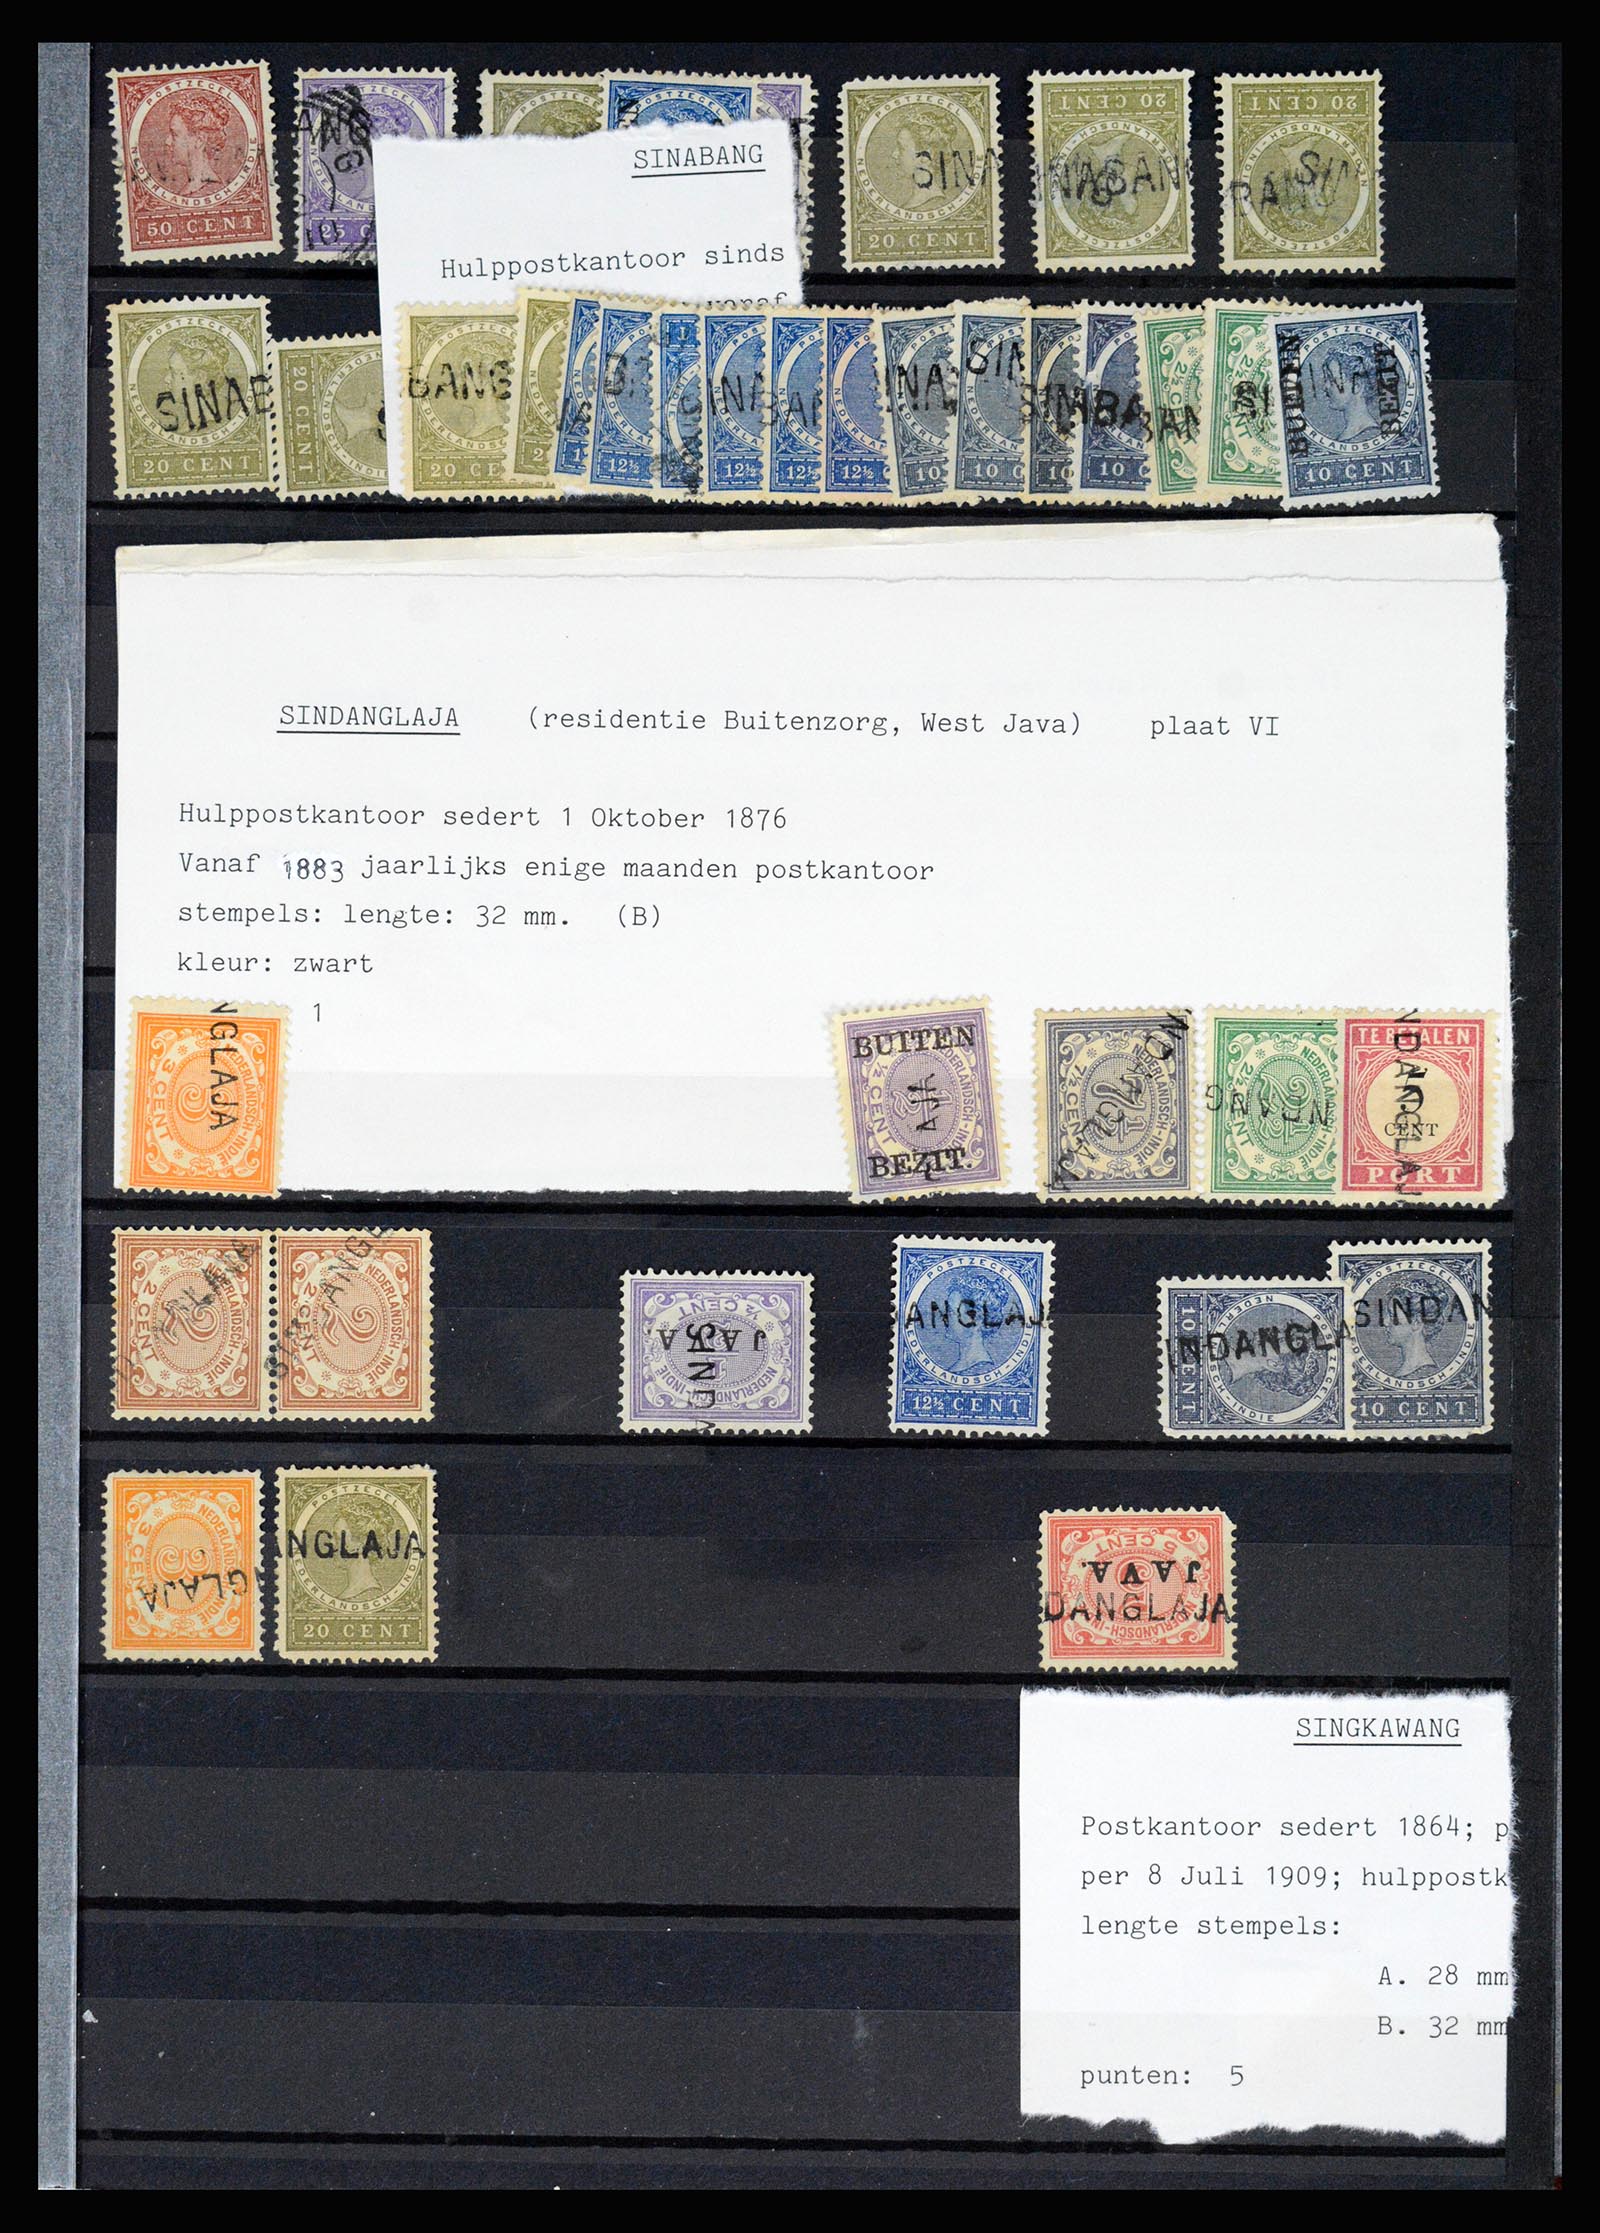 36512 063 - Stamp collection 36512 Nederlands Indië stempels 1872-1930.